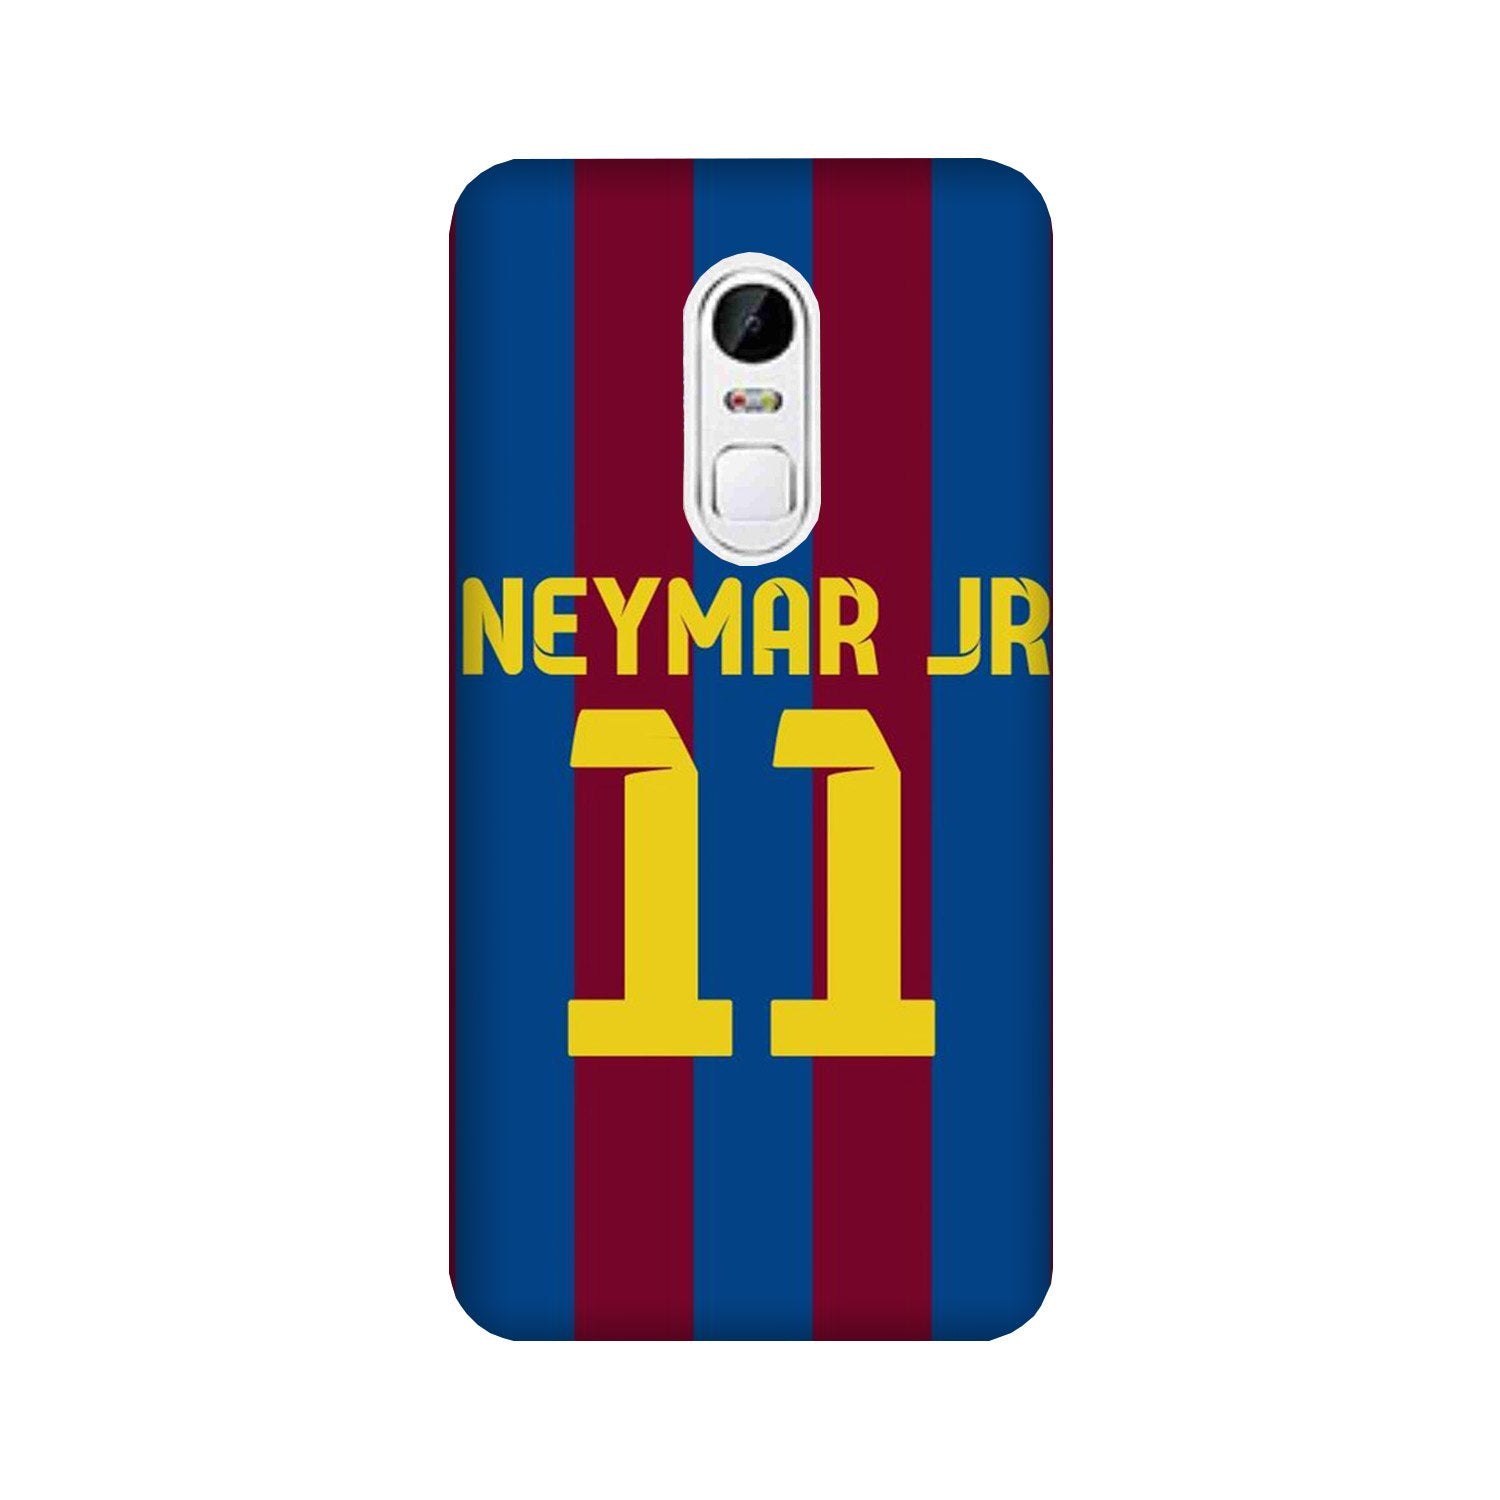 Neymar Jr Case for Lenovo Vibe X3(Design - 162)